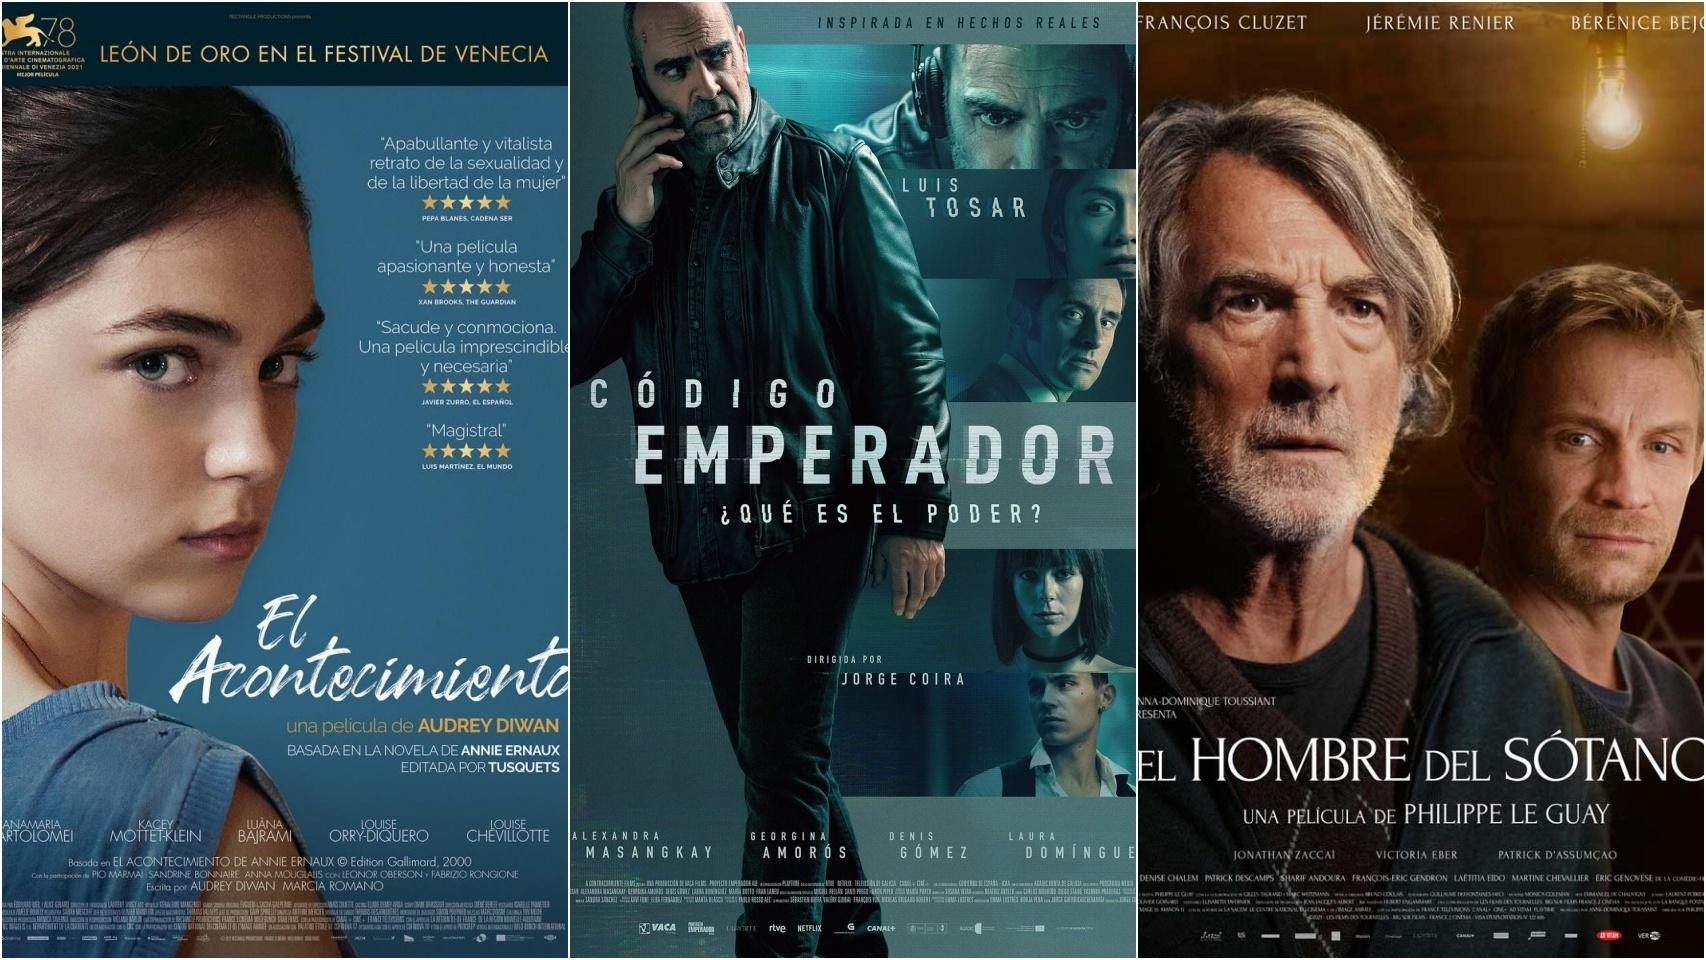 Somos cine - La llamada: Cine español online, en Somos Cine